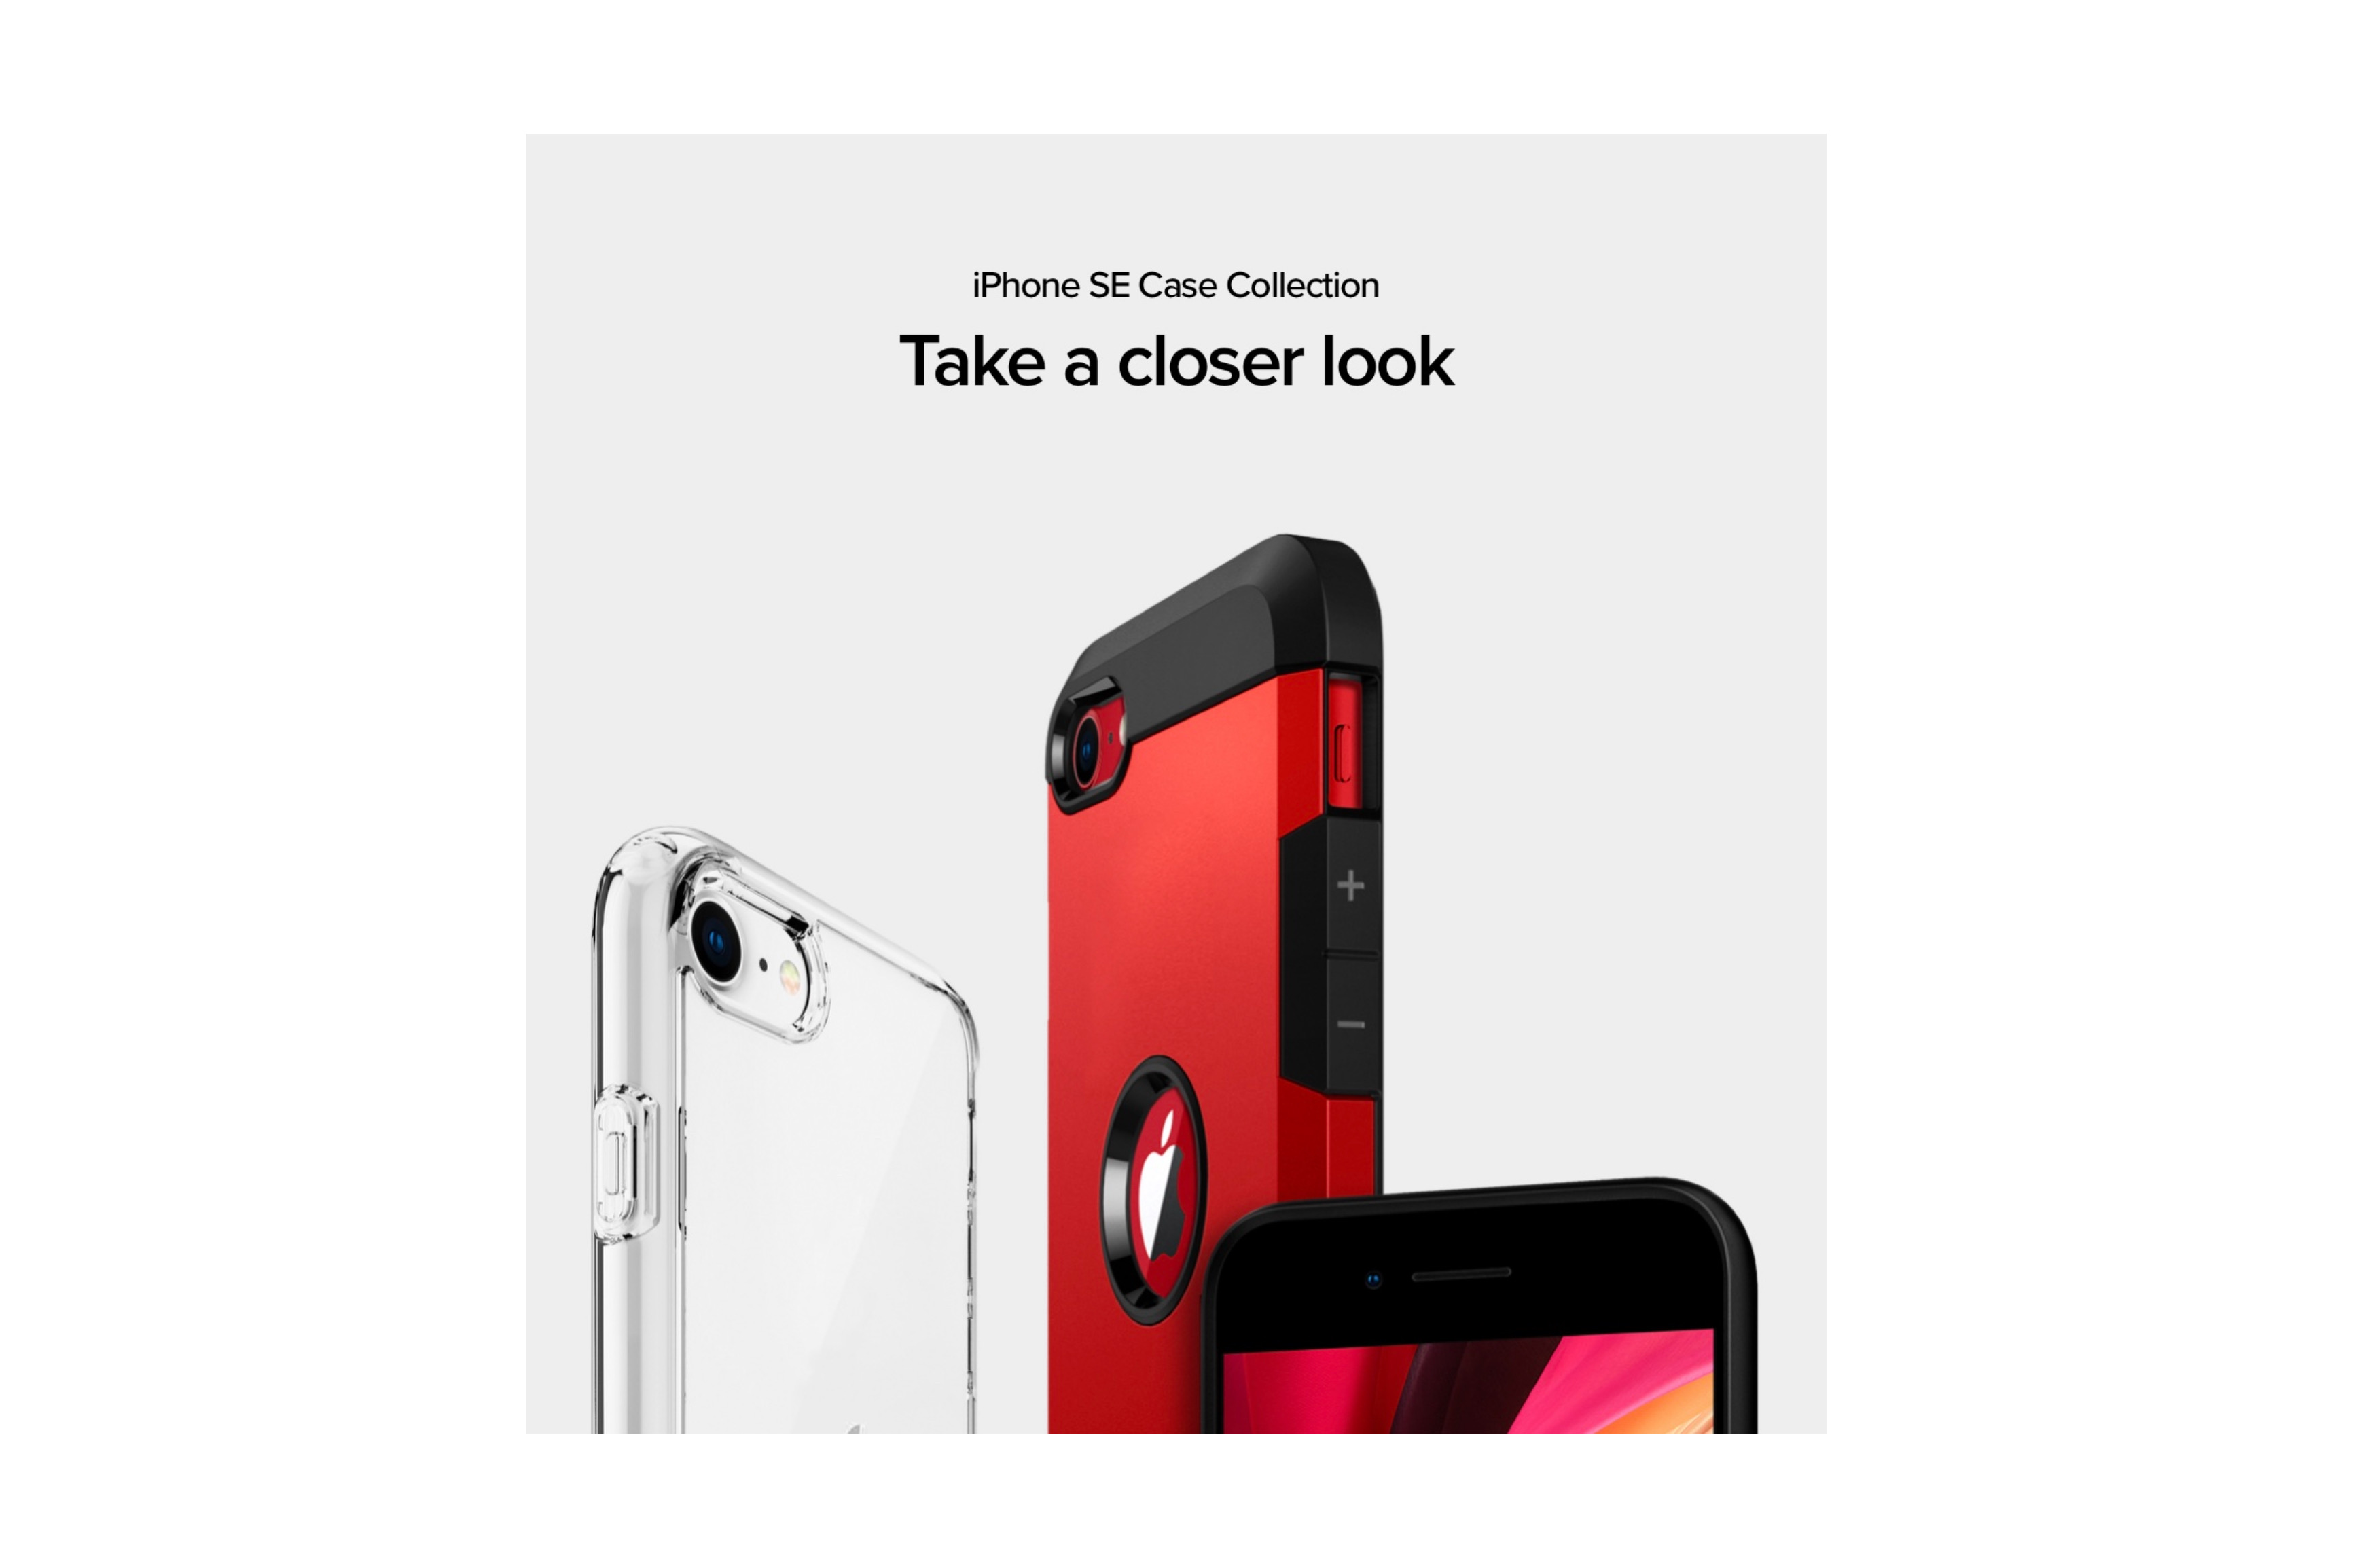 発表記念 Off 第2世代iphone Se用ケースがspigenより発売 シュピゲンジャパン株式会社のプレスリリース